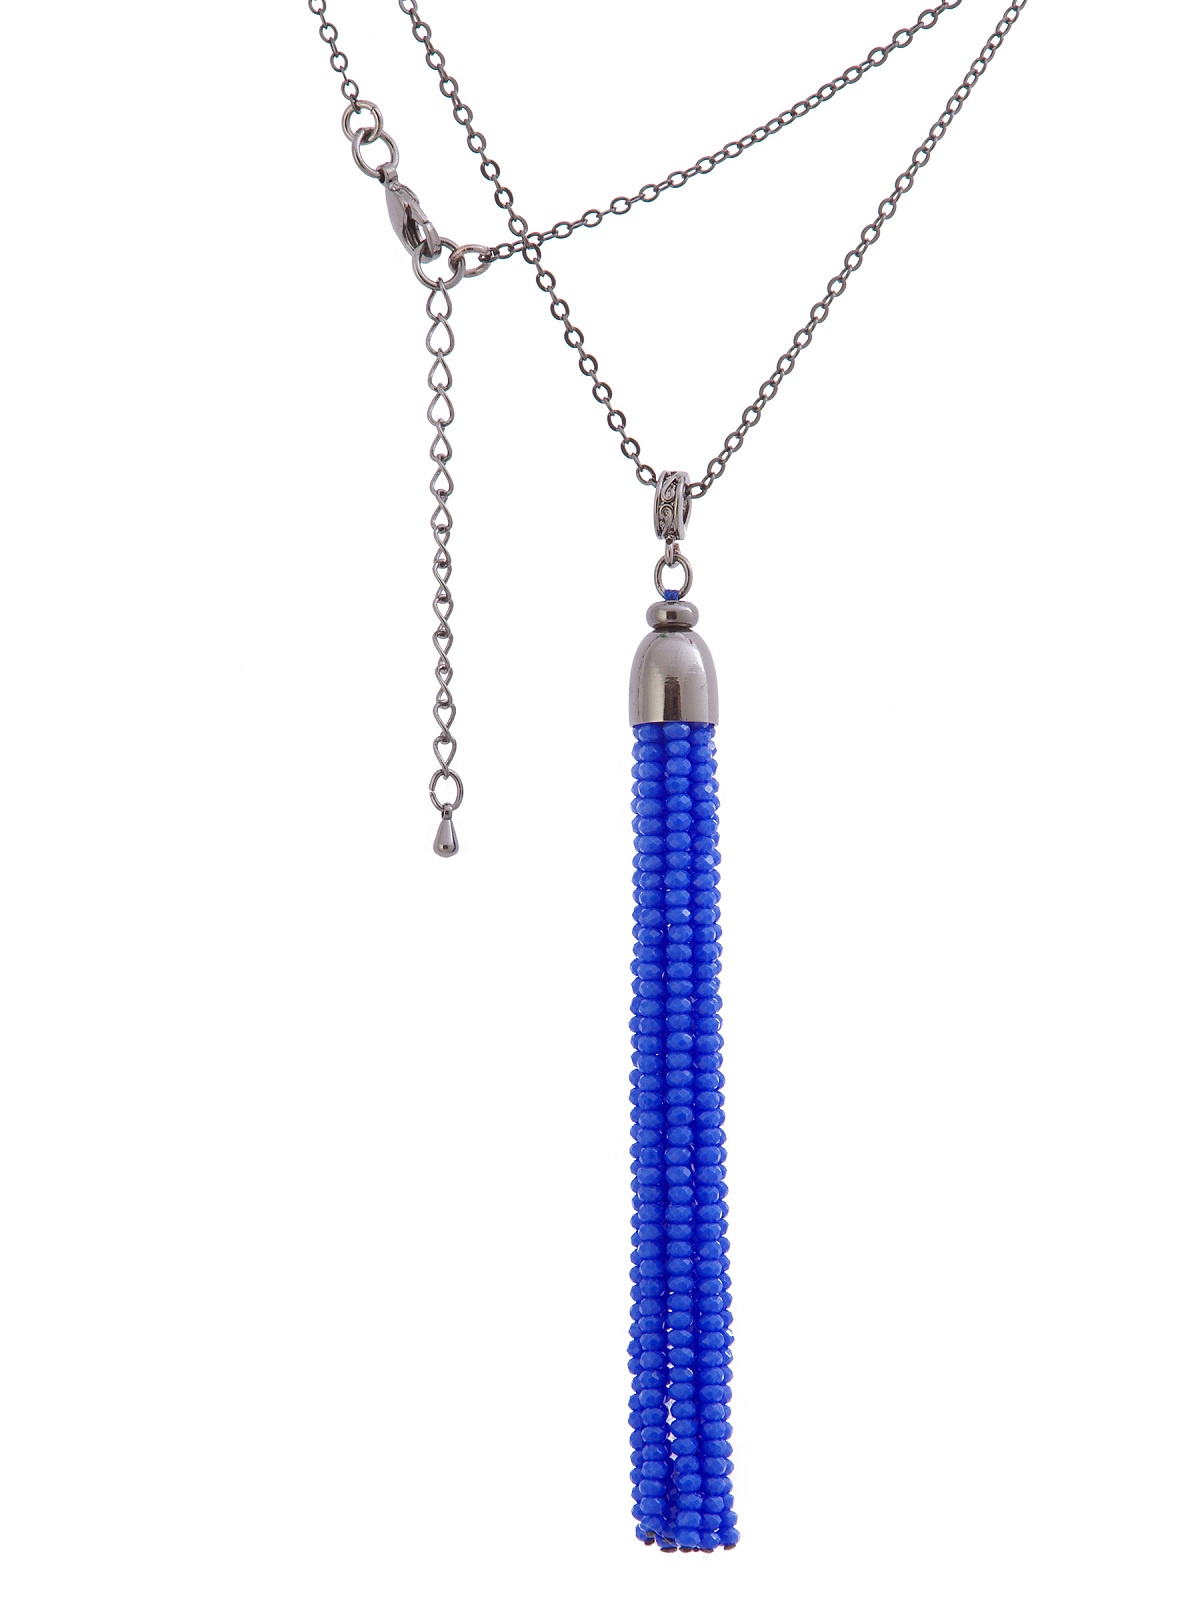 фото Колье/ожерелье бижутерное ЖемАрт с339А-55, Кварц, Бижутерный сплав, синий, серебристый